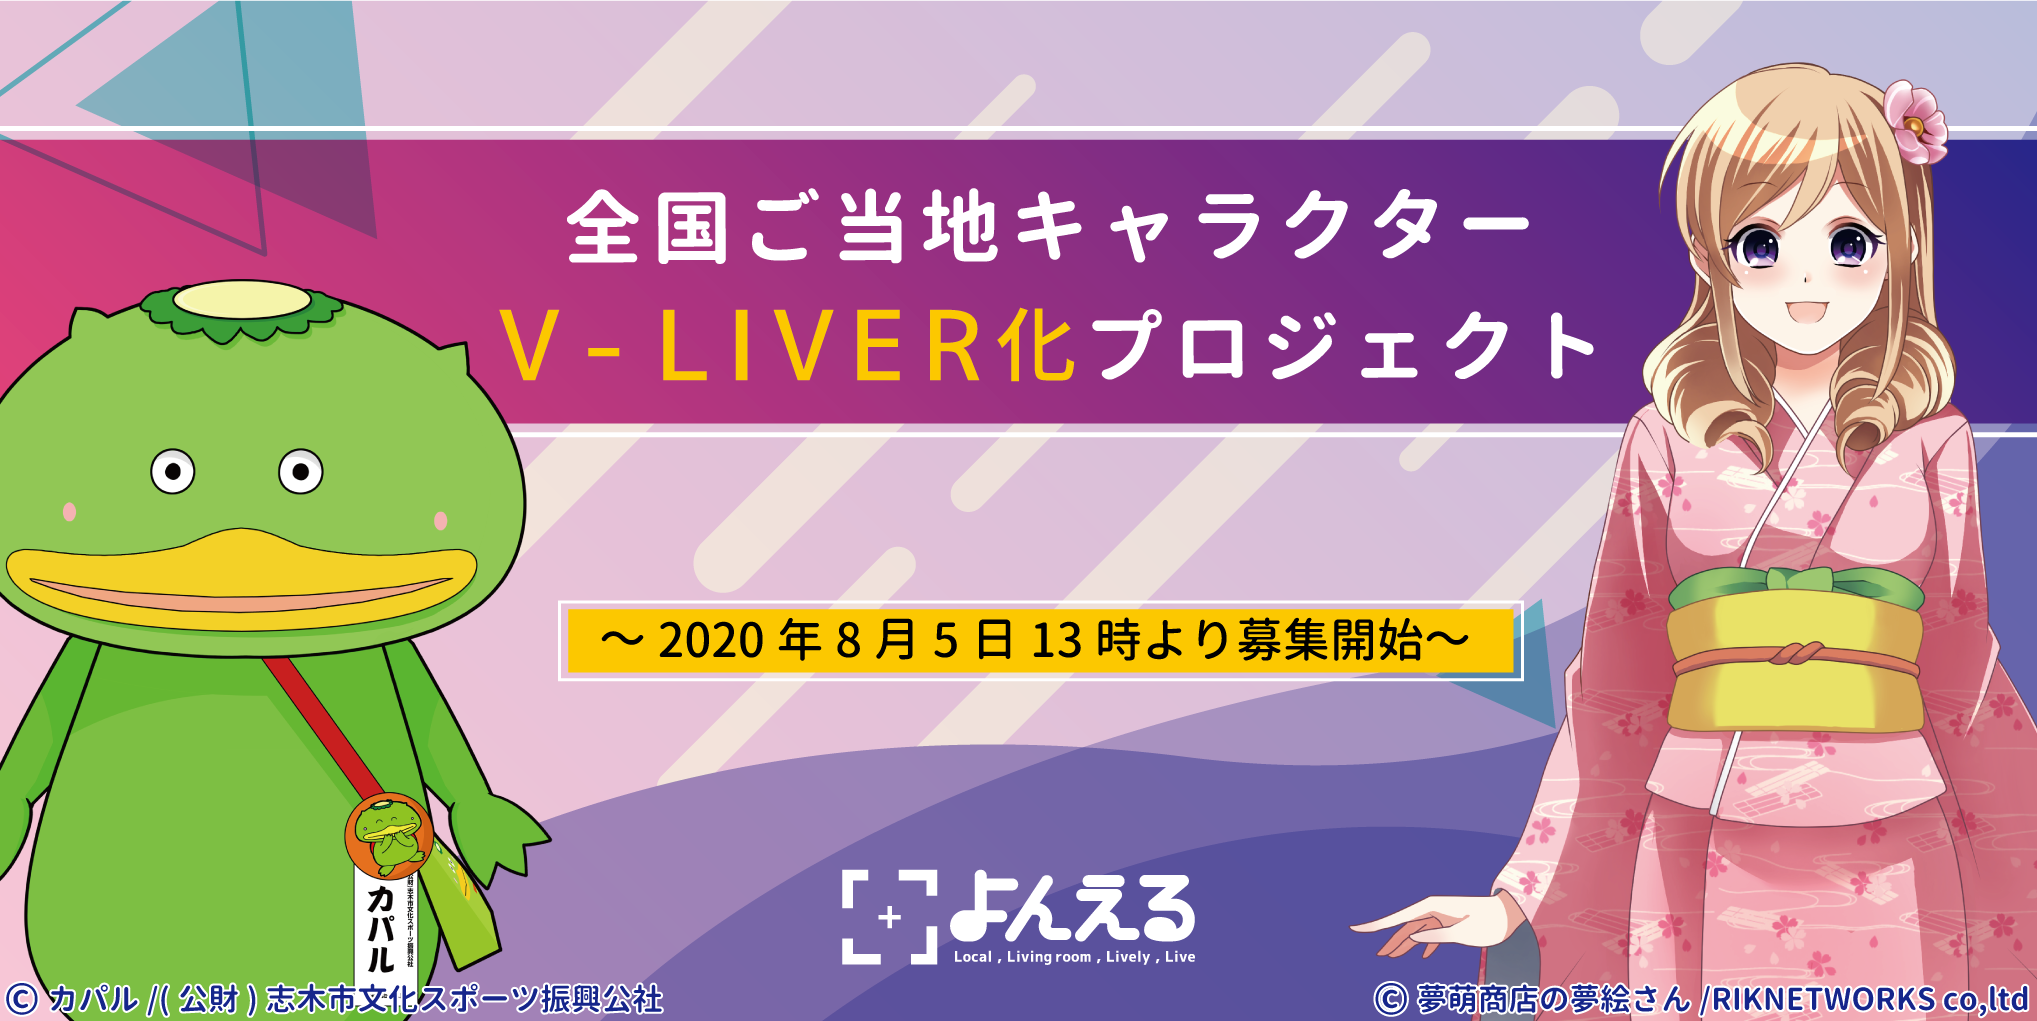 キャラクターのバーチャル活動をトータルサポート 全国ご当地キャラv Liver化プロジェクト スタート 株式会社17 Media Japanのプレスリリース